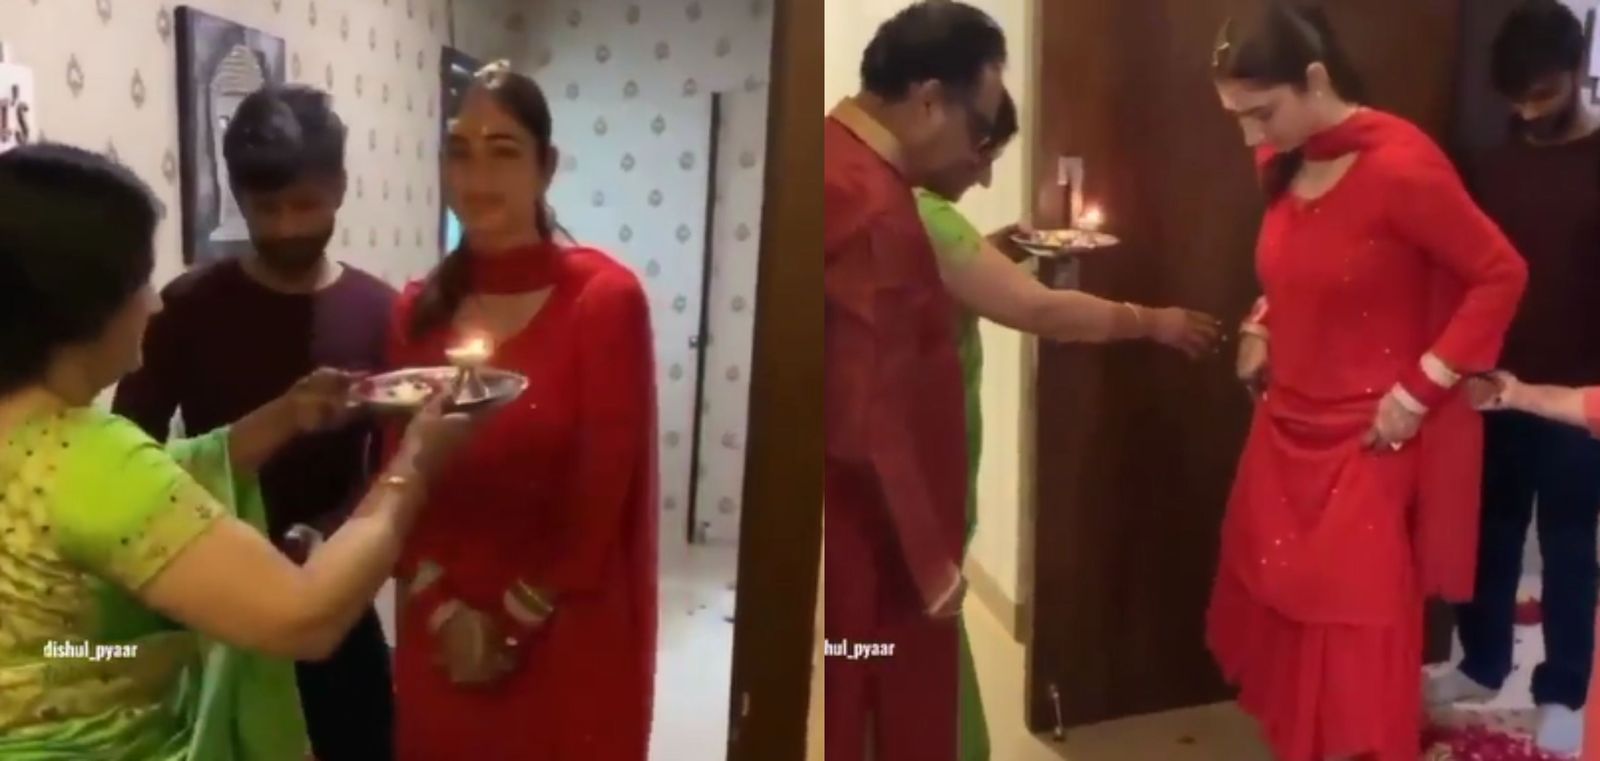 राहुल वैद्य के परिवार ने ऐसे किया नई दुल्हन दिशा परमार का स्वागत, गृह प्रवेश रस्म का वीडियो आया सामने 